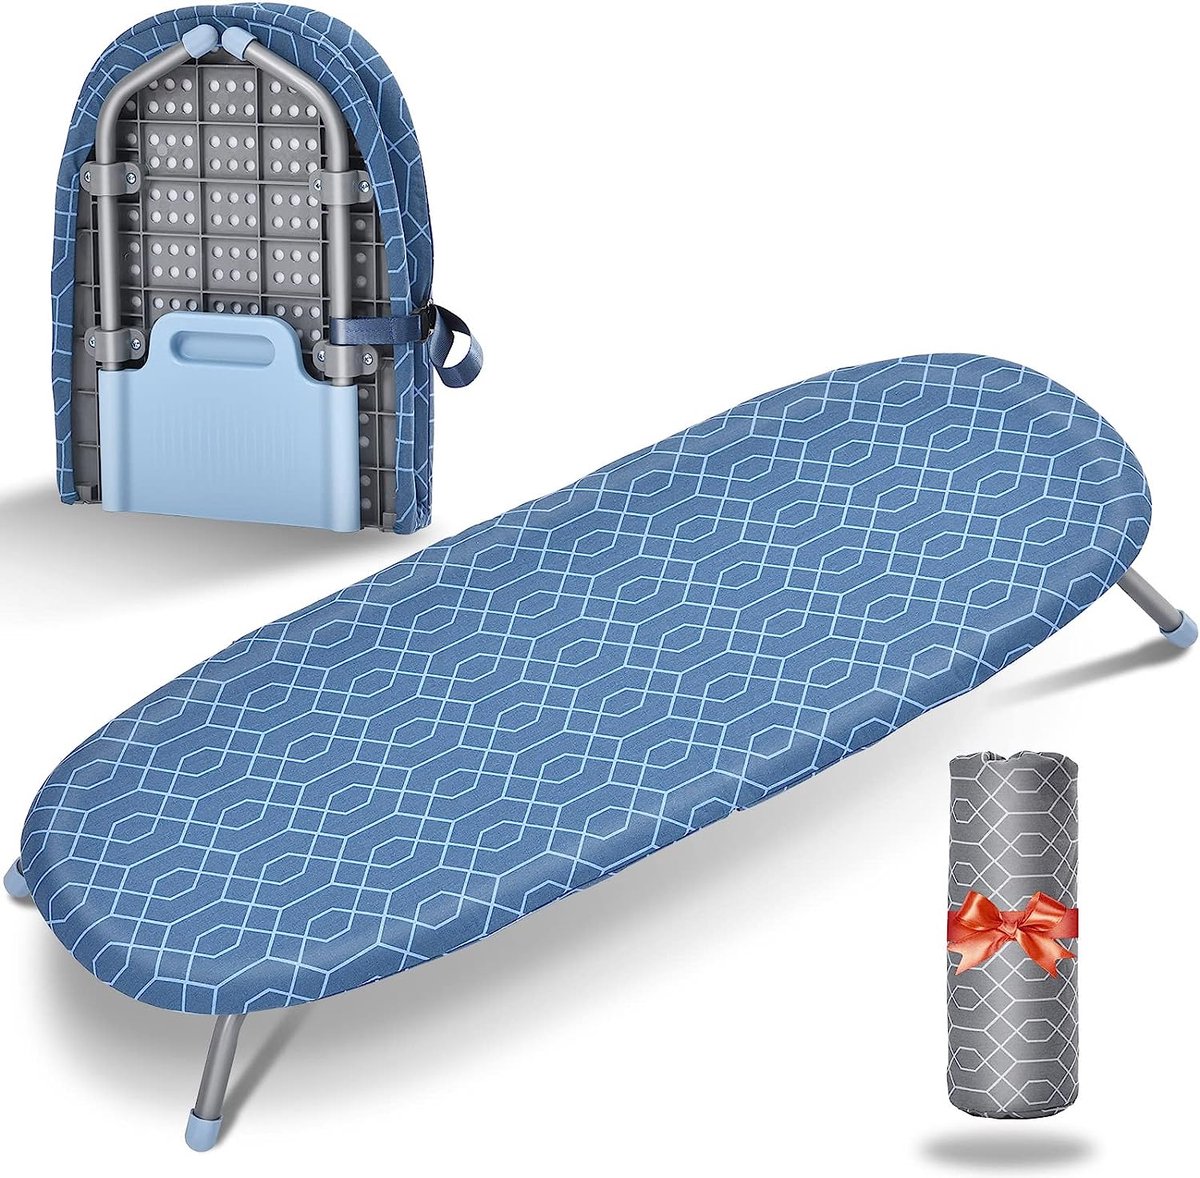 Opvouwbare tafel-strijkplank, klein, met 2 hittebestendige strijkafdekkingen, draagbare strijkplankovertrekken met antislip voetjes voor thuisgebruik, 31 x 82 cm, blauw en grijs